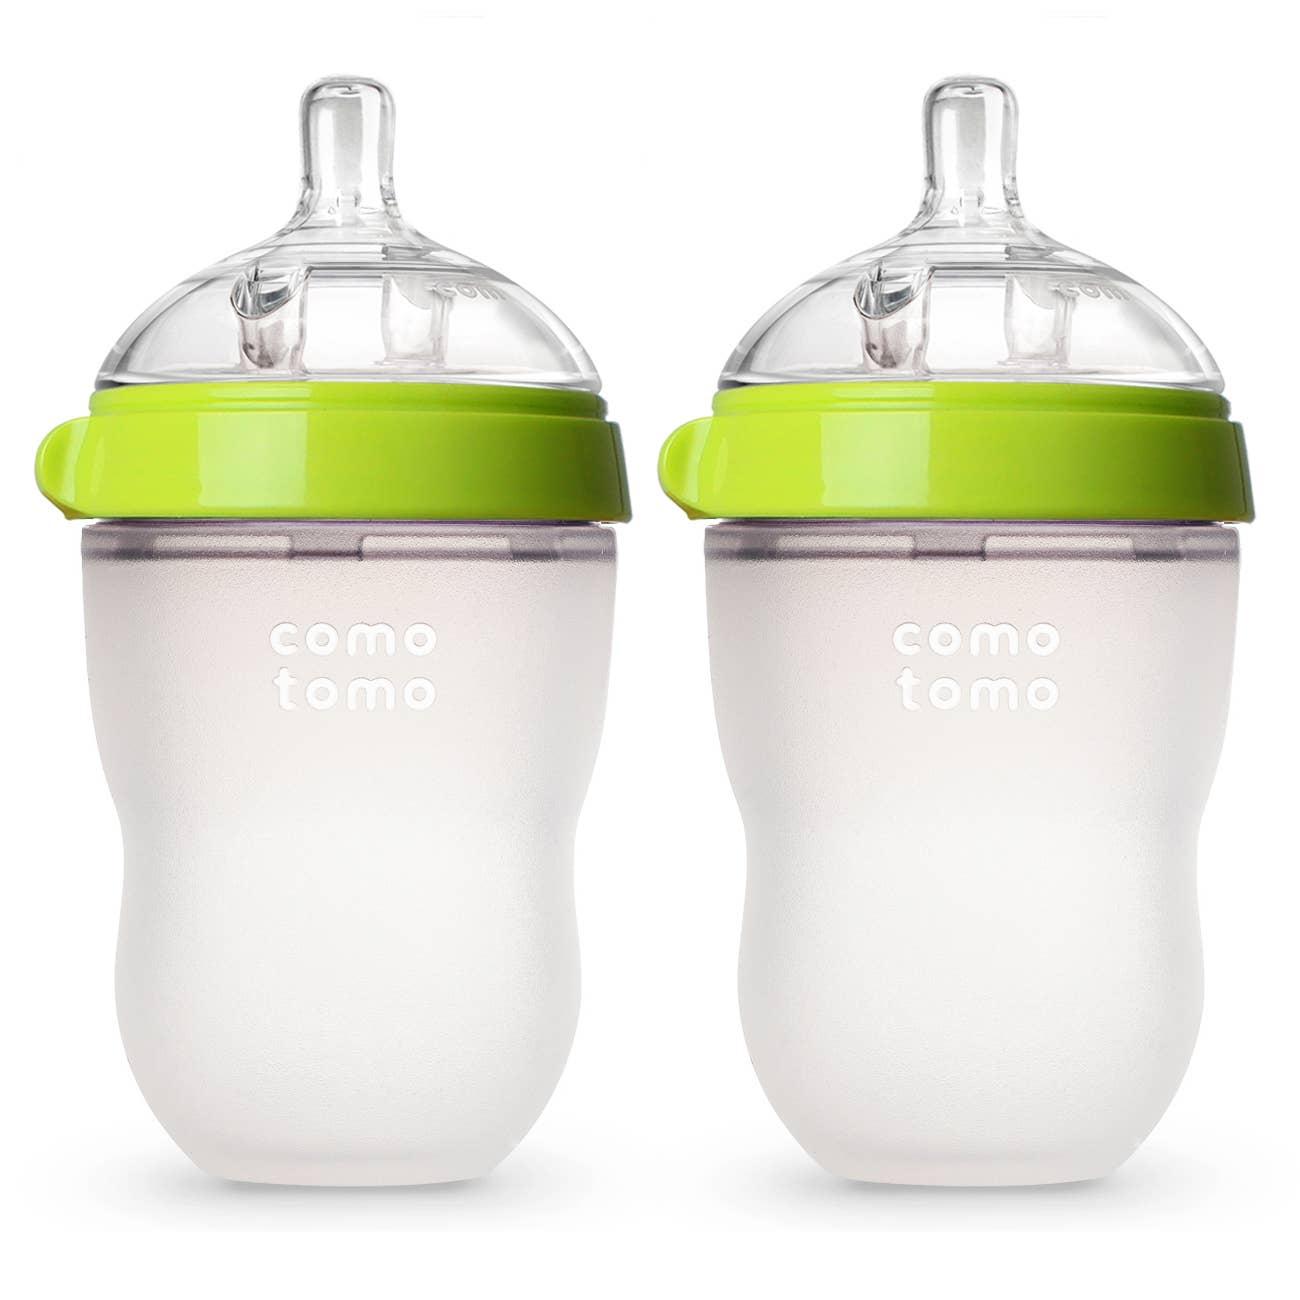 Comotomo - Comotomo Baby Bottle, Double Pack - 8 oz - Green